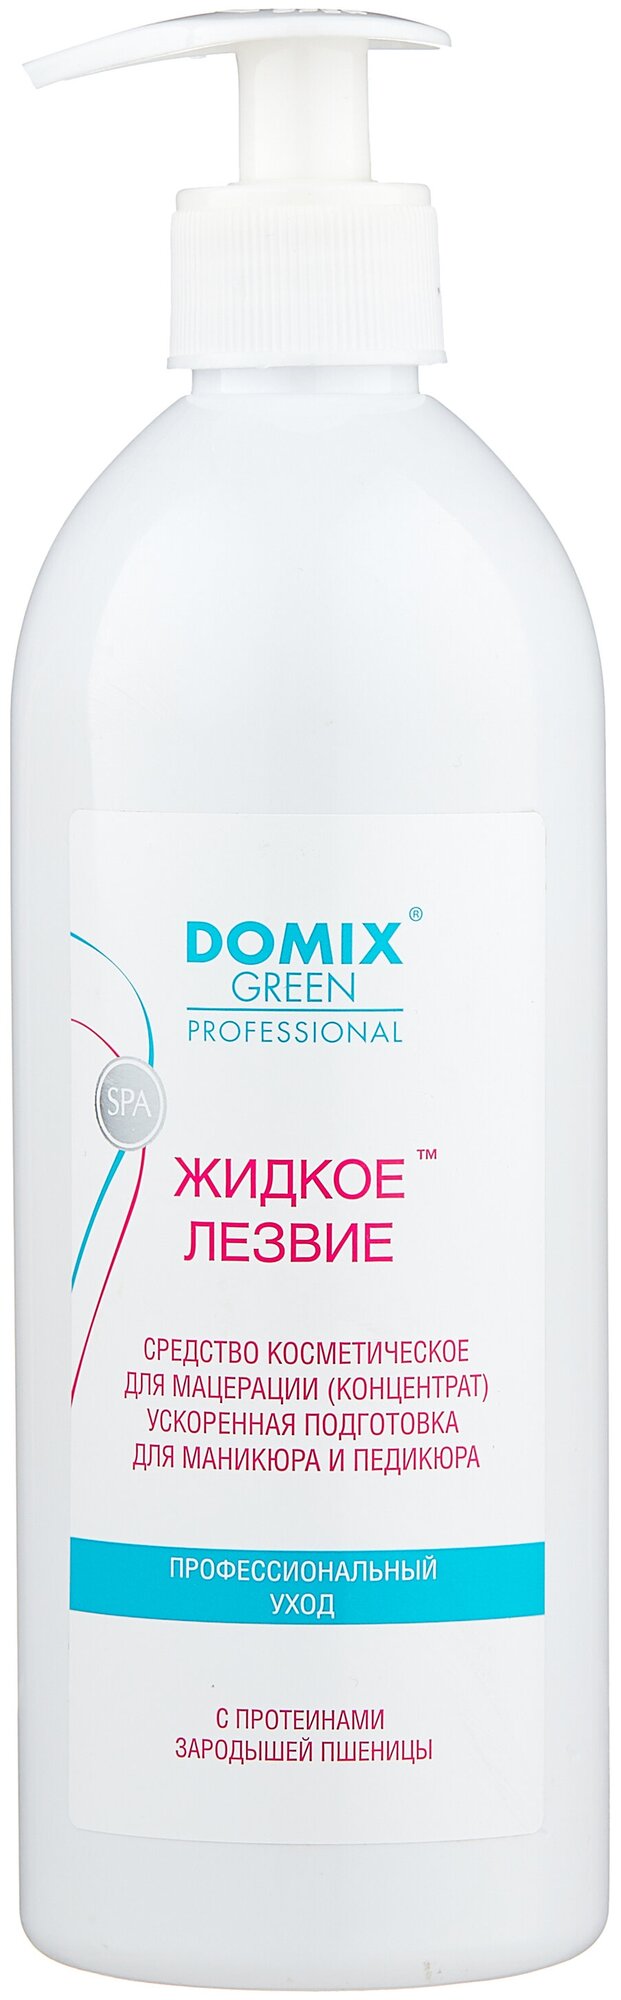 Domix Green Professional Средство для ускоренной подготовки к маникюру и педикюру Жидкое лезвие